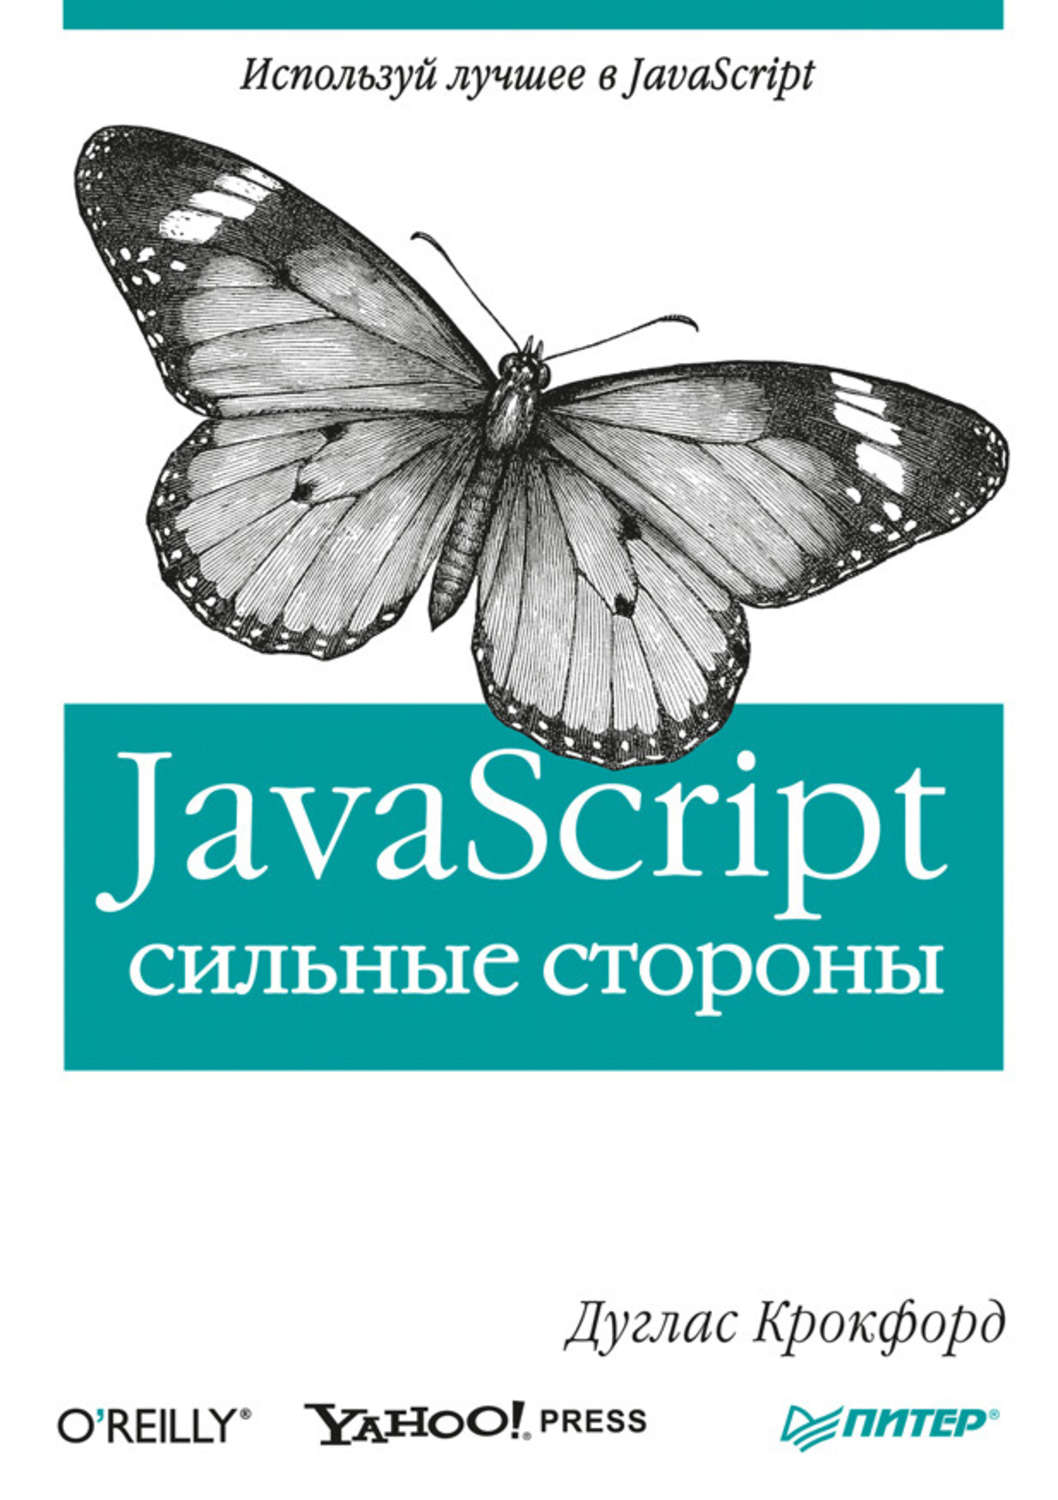 Погружение в JavaScript: подборка книг для начинающих изучать язык